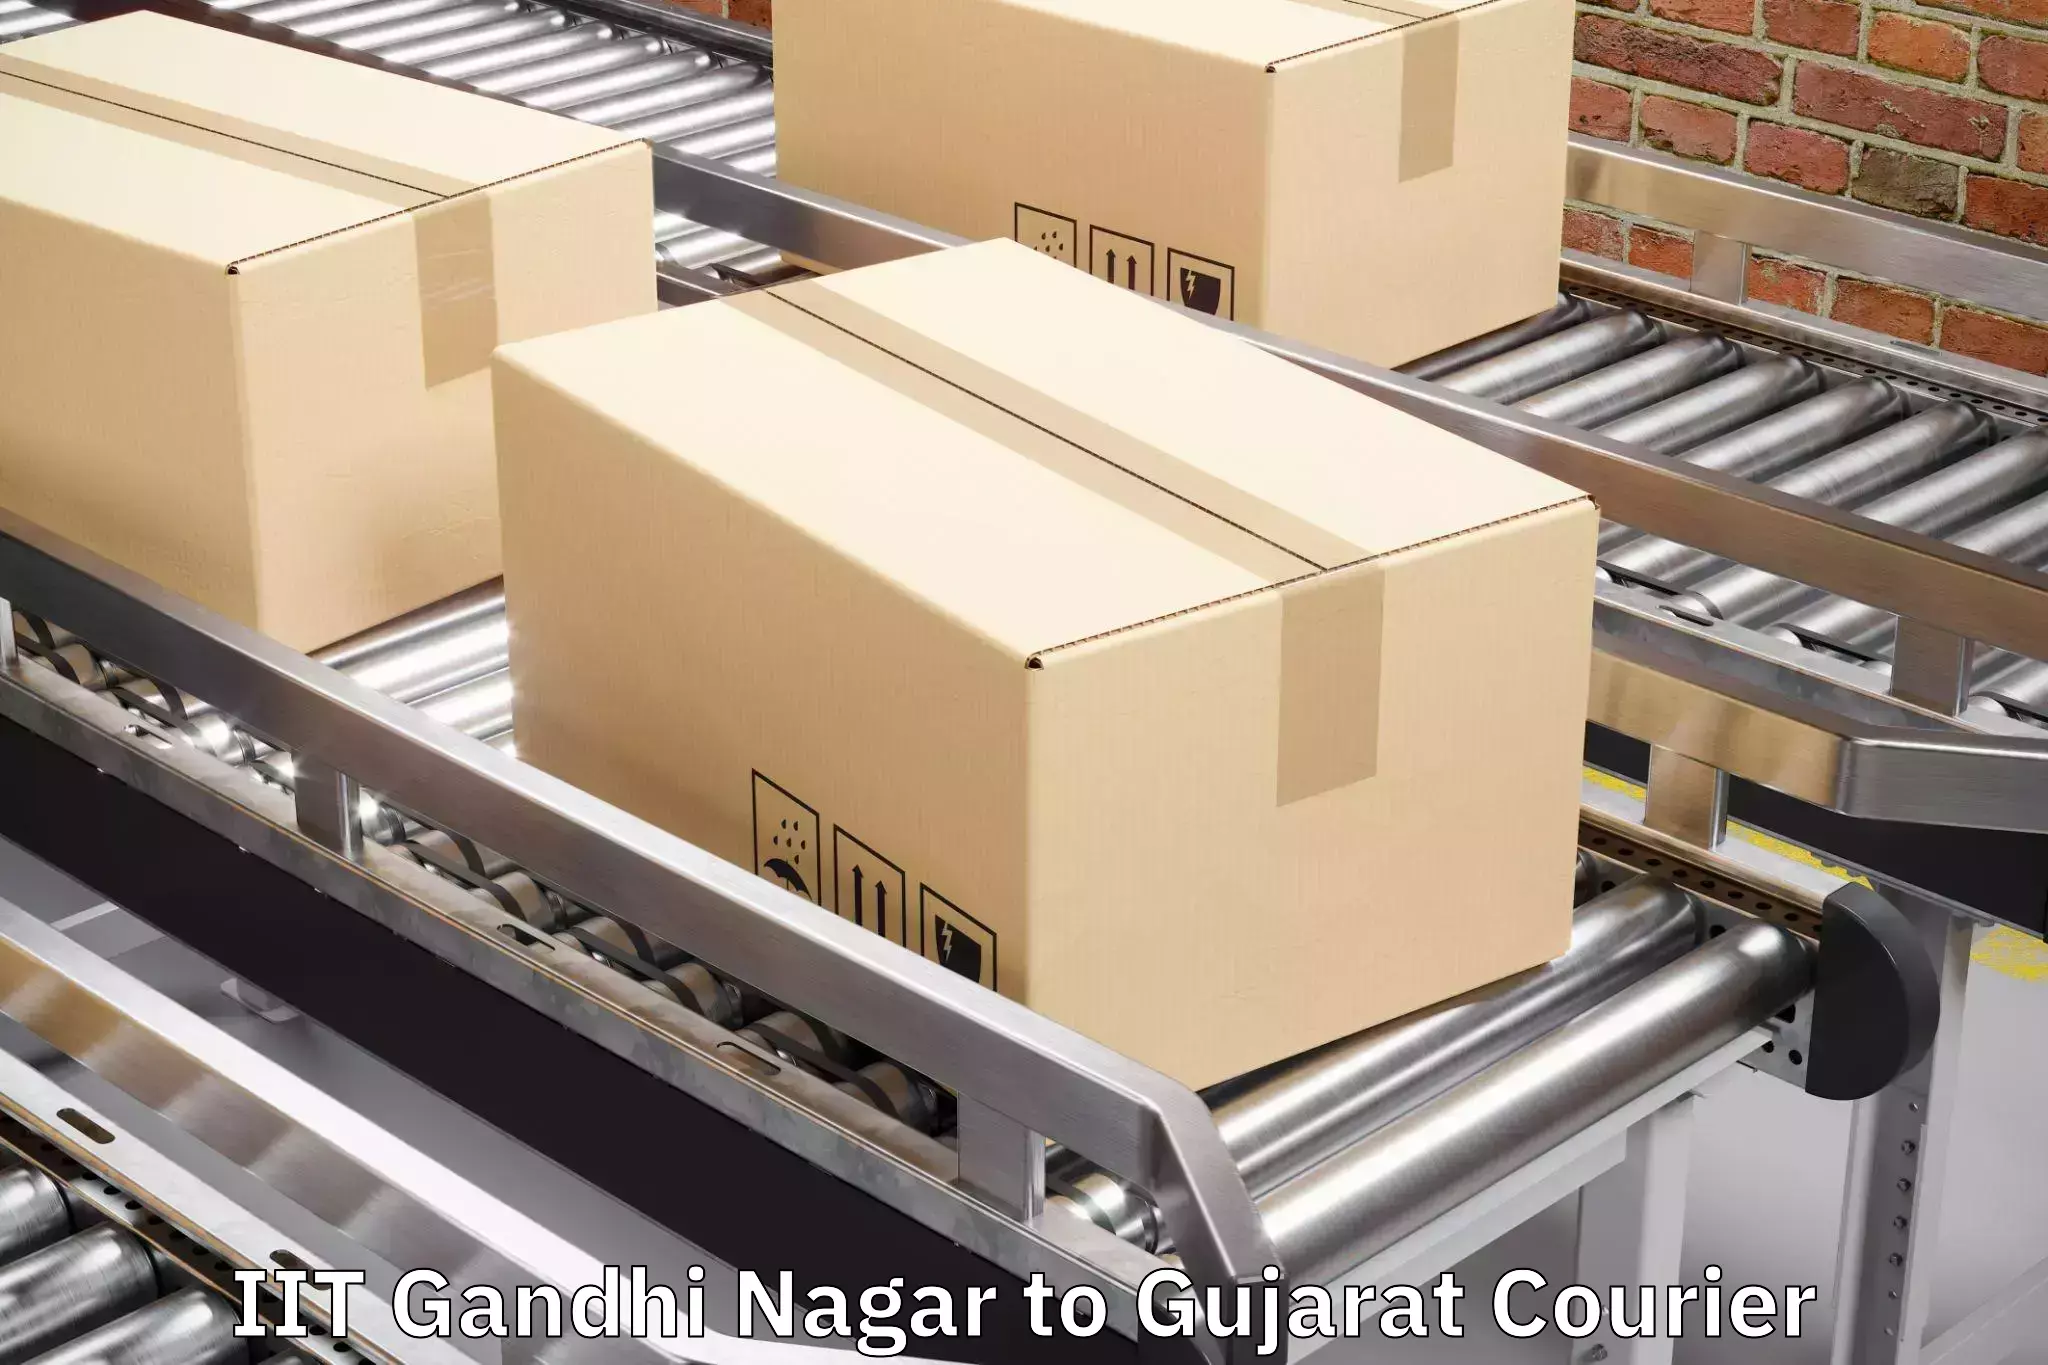 Online luggage shipping booking in IIT Gandhi Nagar to GIDC